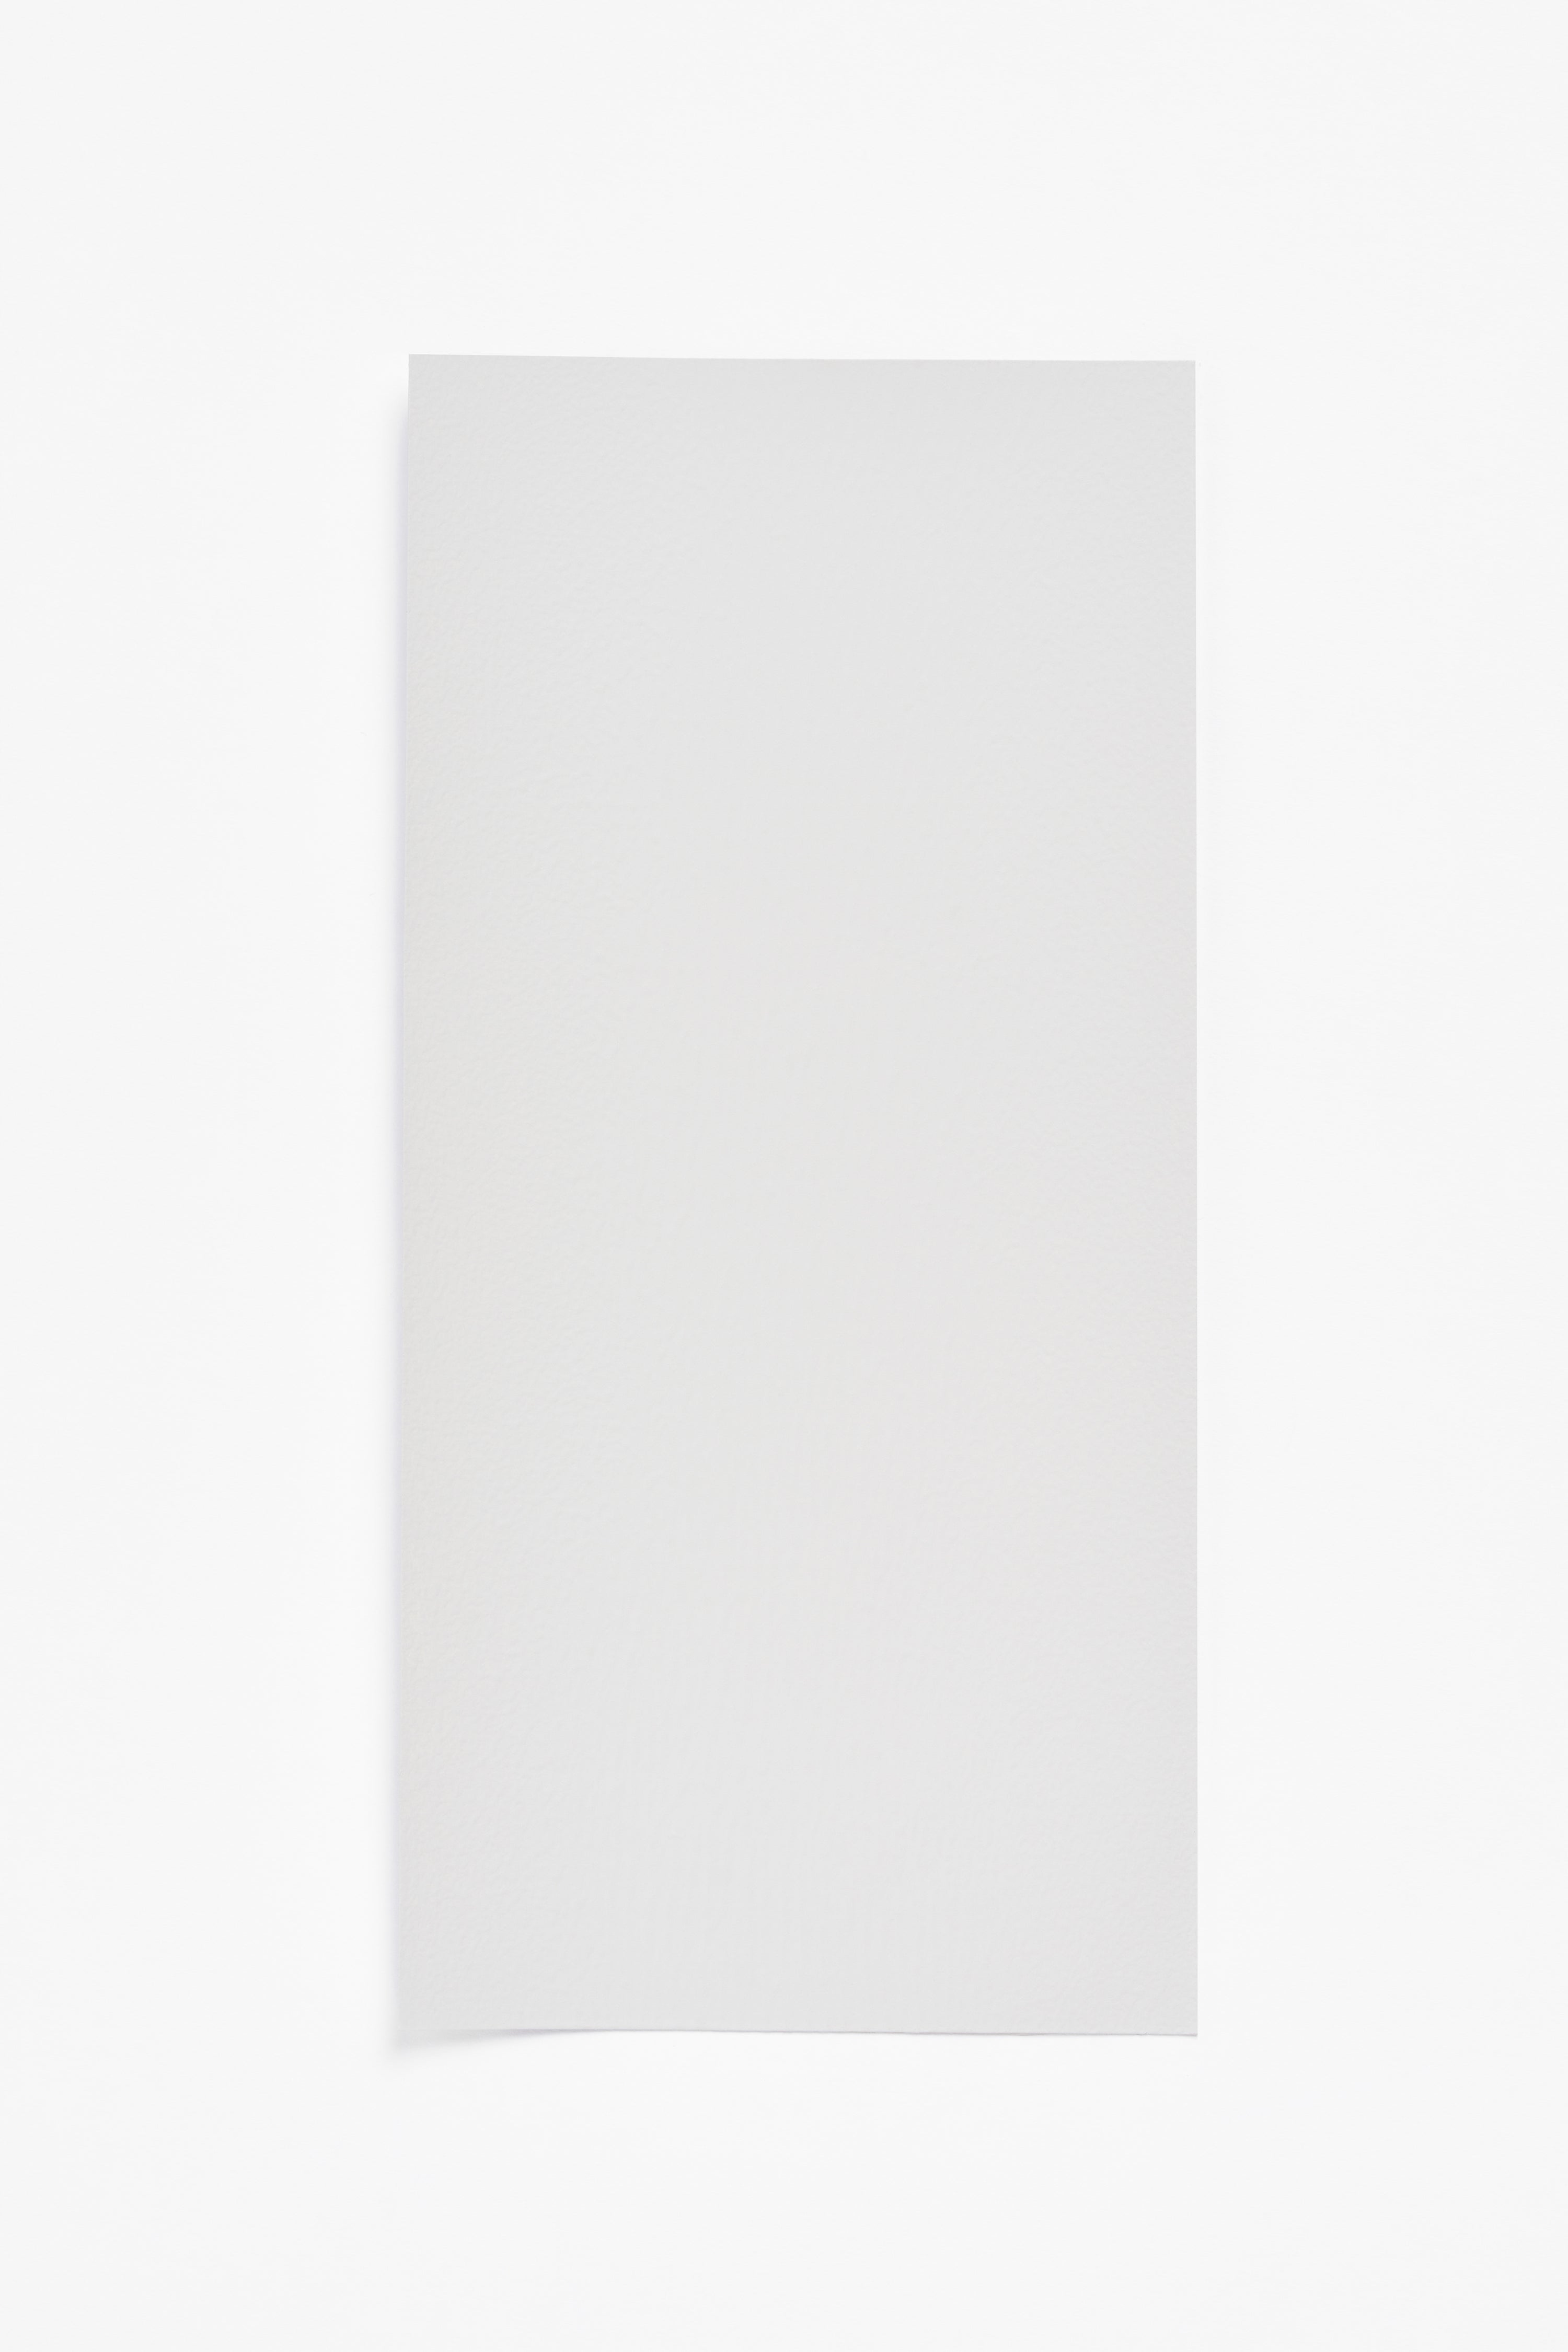 Aluminium — a paint colour developed by David Thulstrup for Blēo